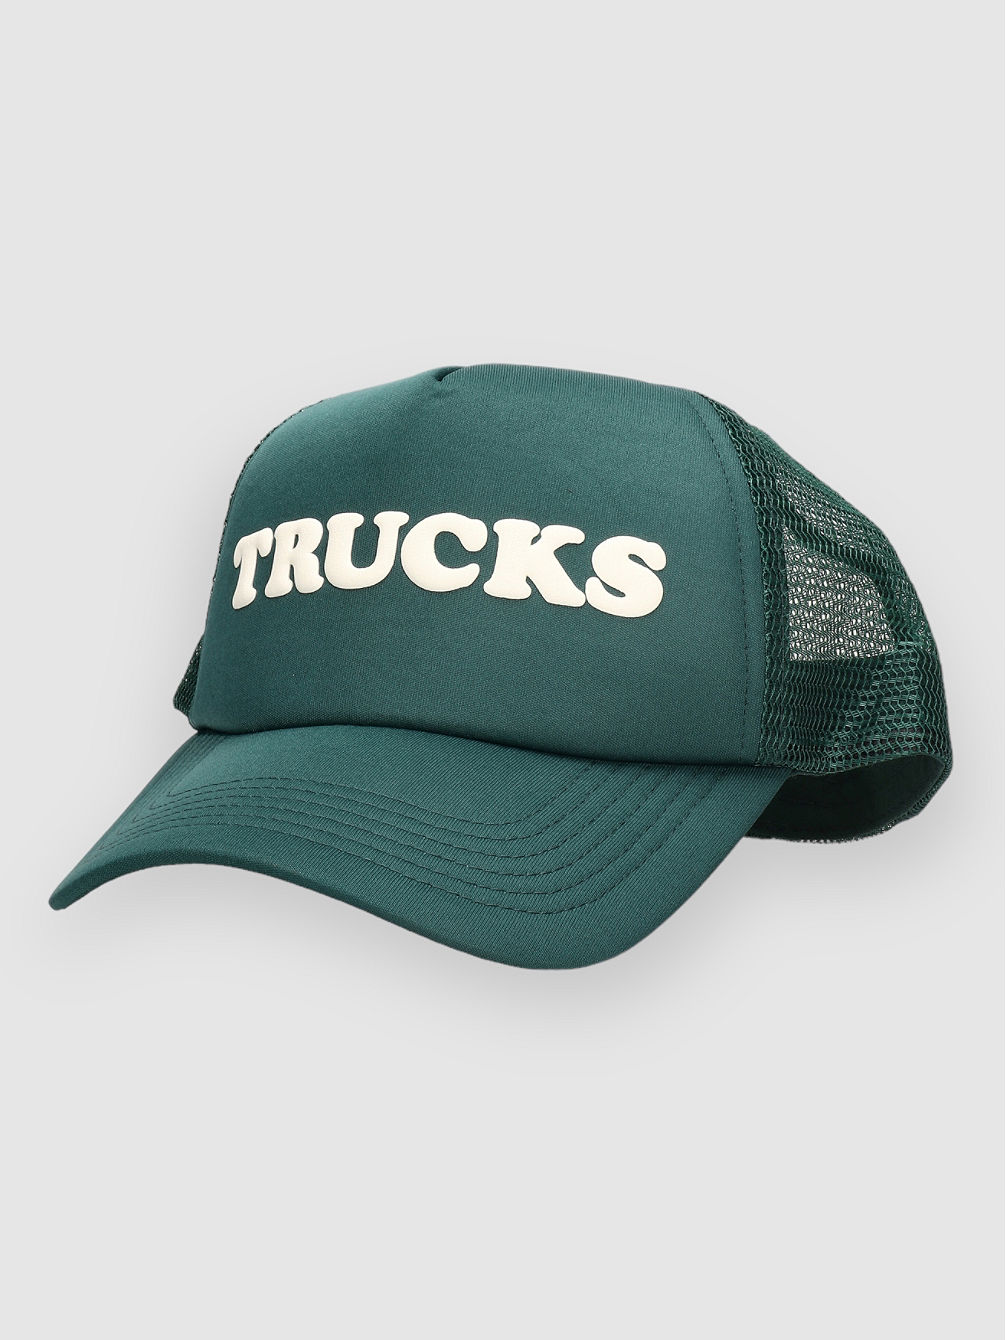 Trucks Trucker Kasket